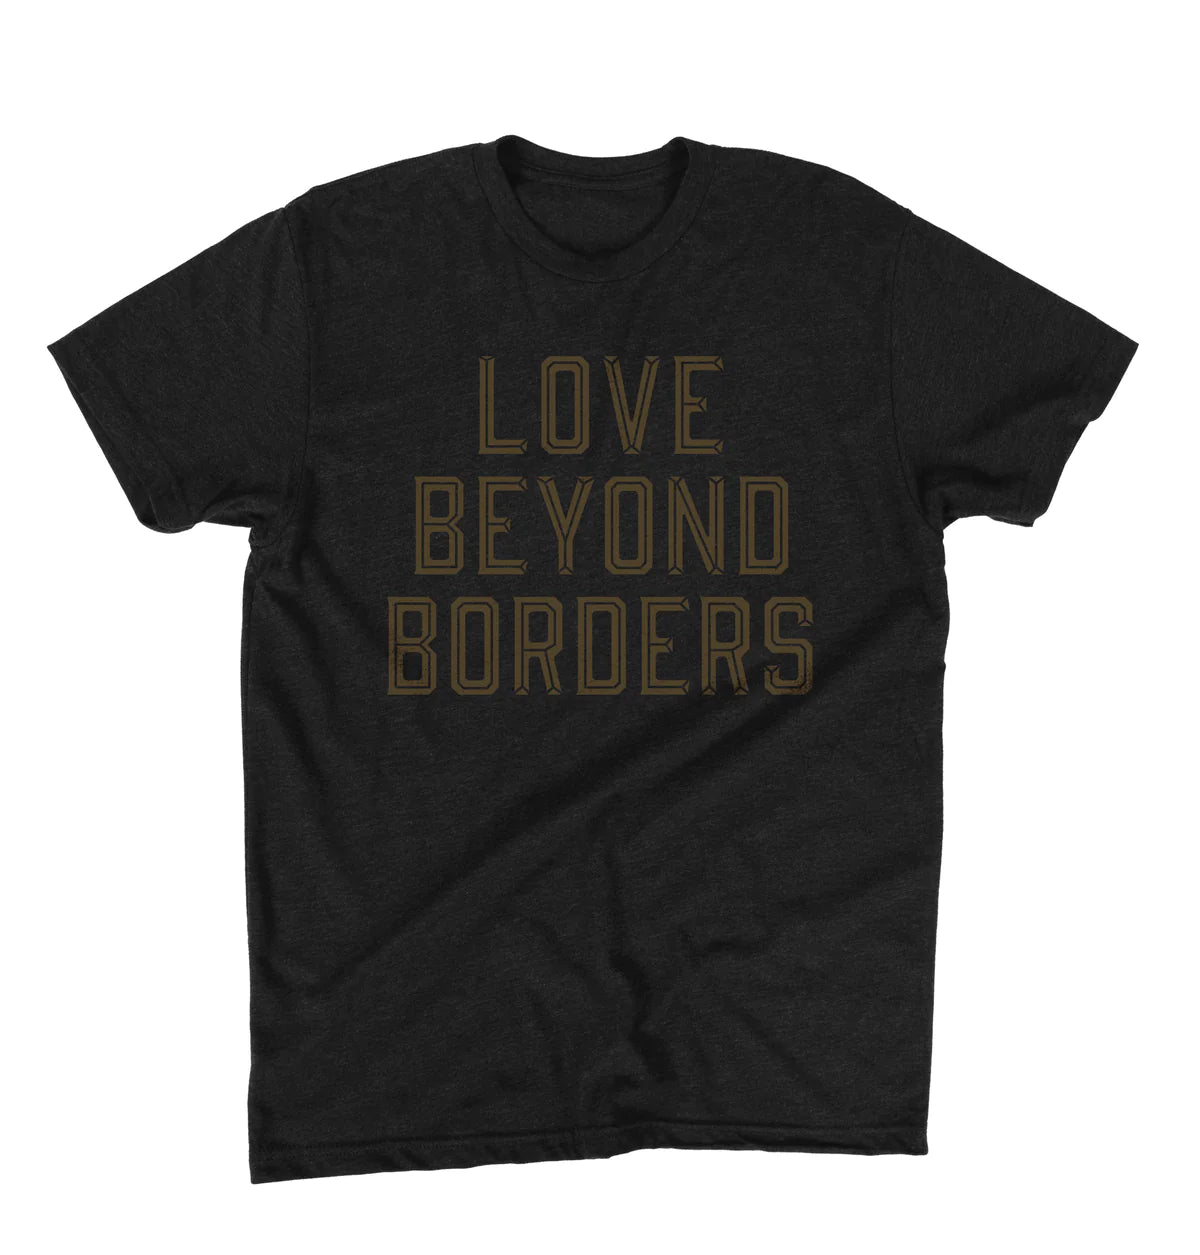 Love beyond Borders Tee